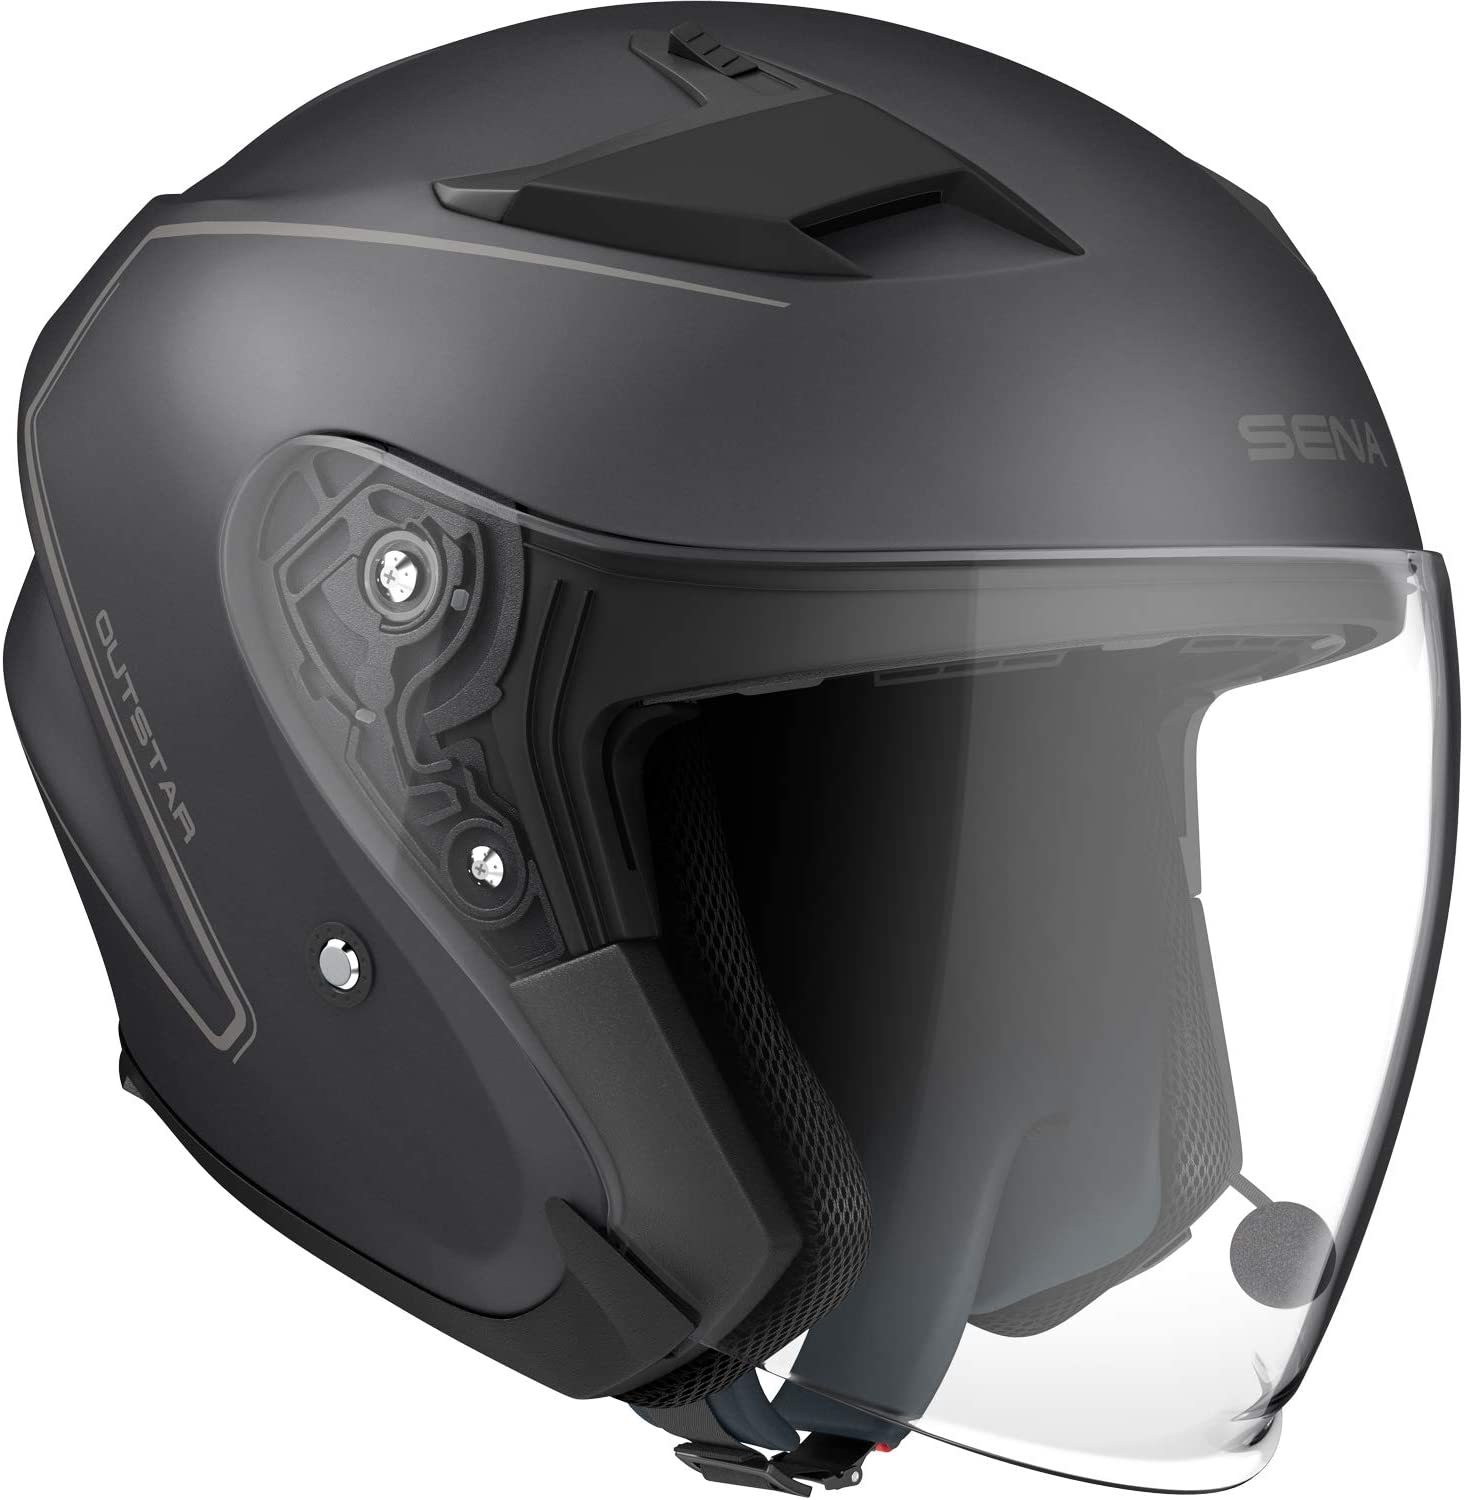 Sena Outstar Helm mit integrierter Bluetooth Gegensprechanlage und Smartphone Konnektivitaet